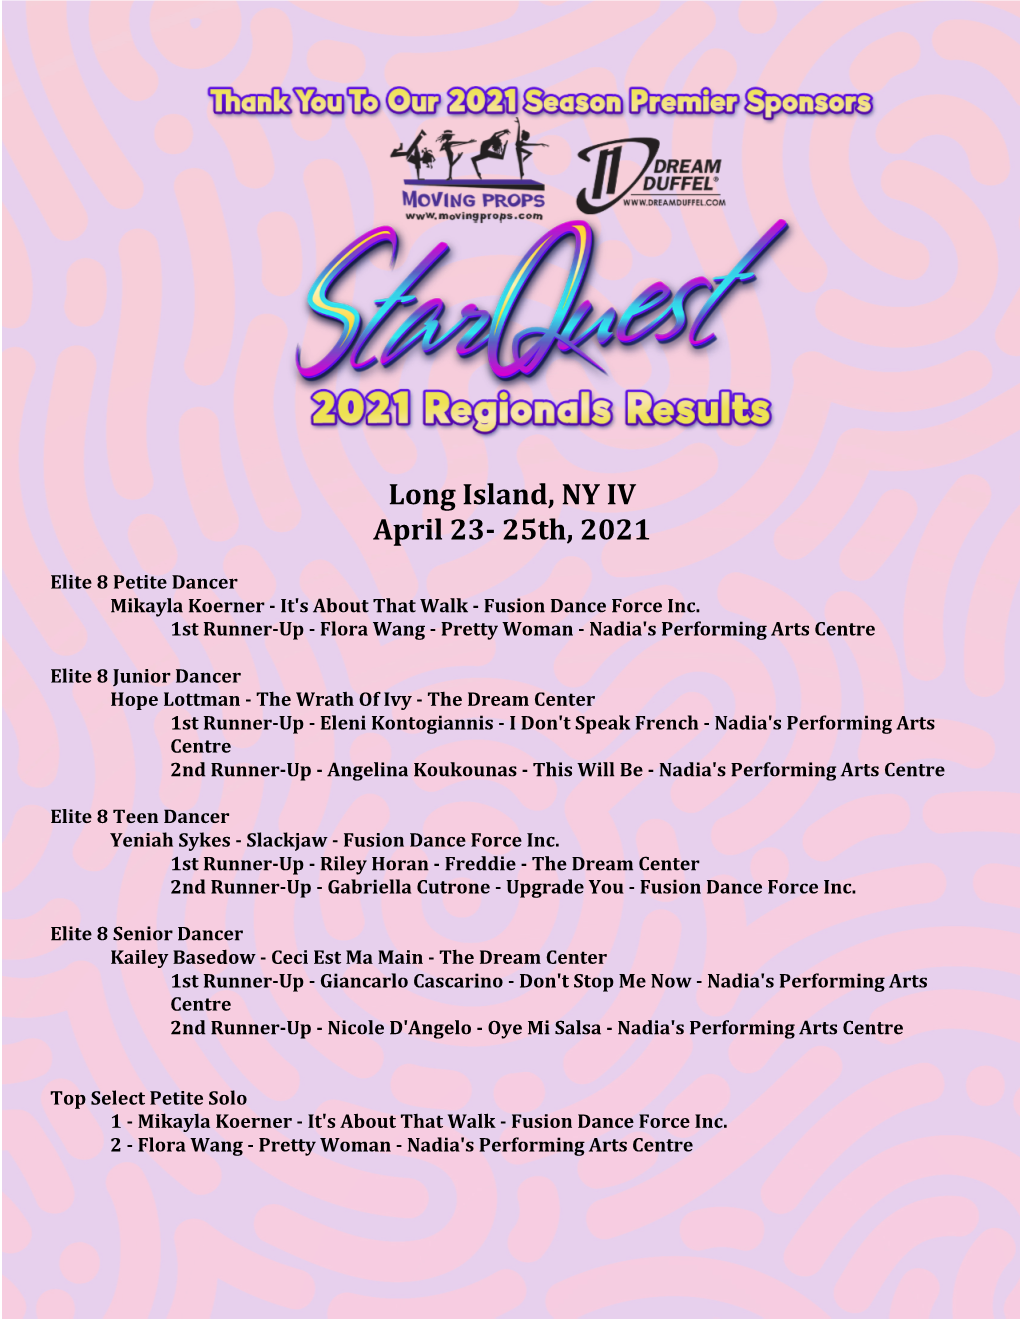 Long Island, NY IV April 23- 25Th, 2021